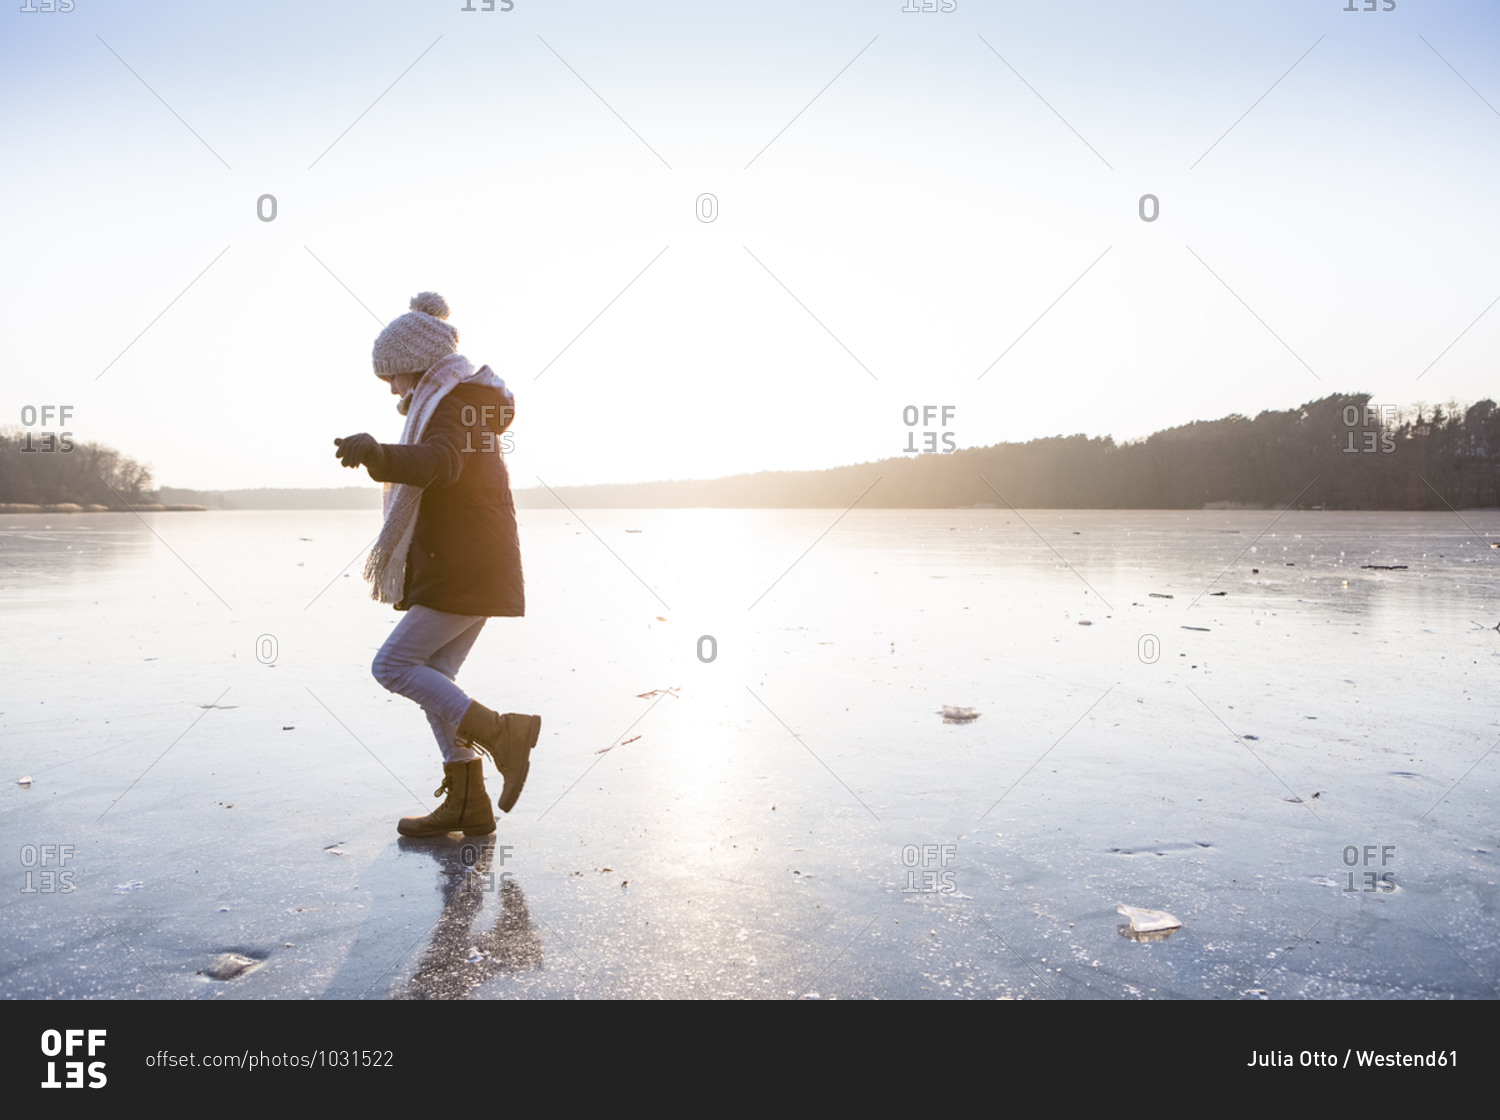 Germany- Brandenburg- Lake Straussee- girl walking on frozen lake